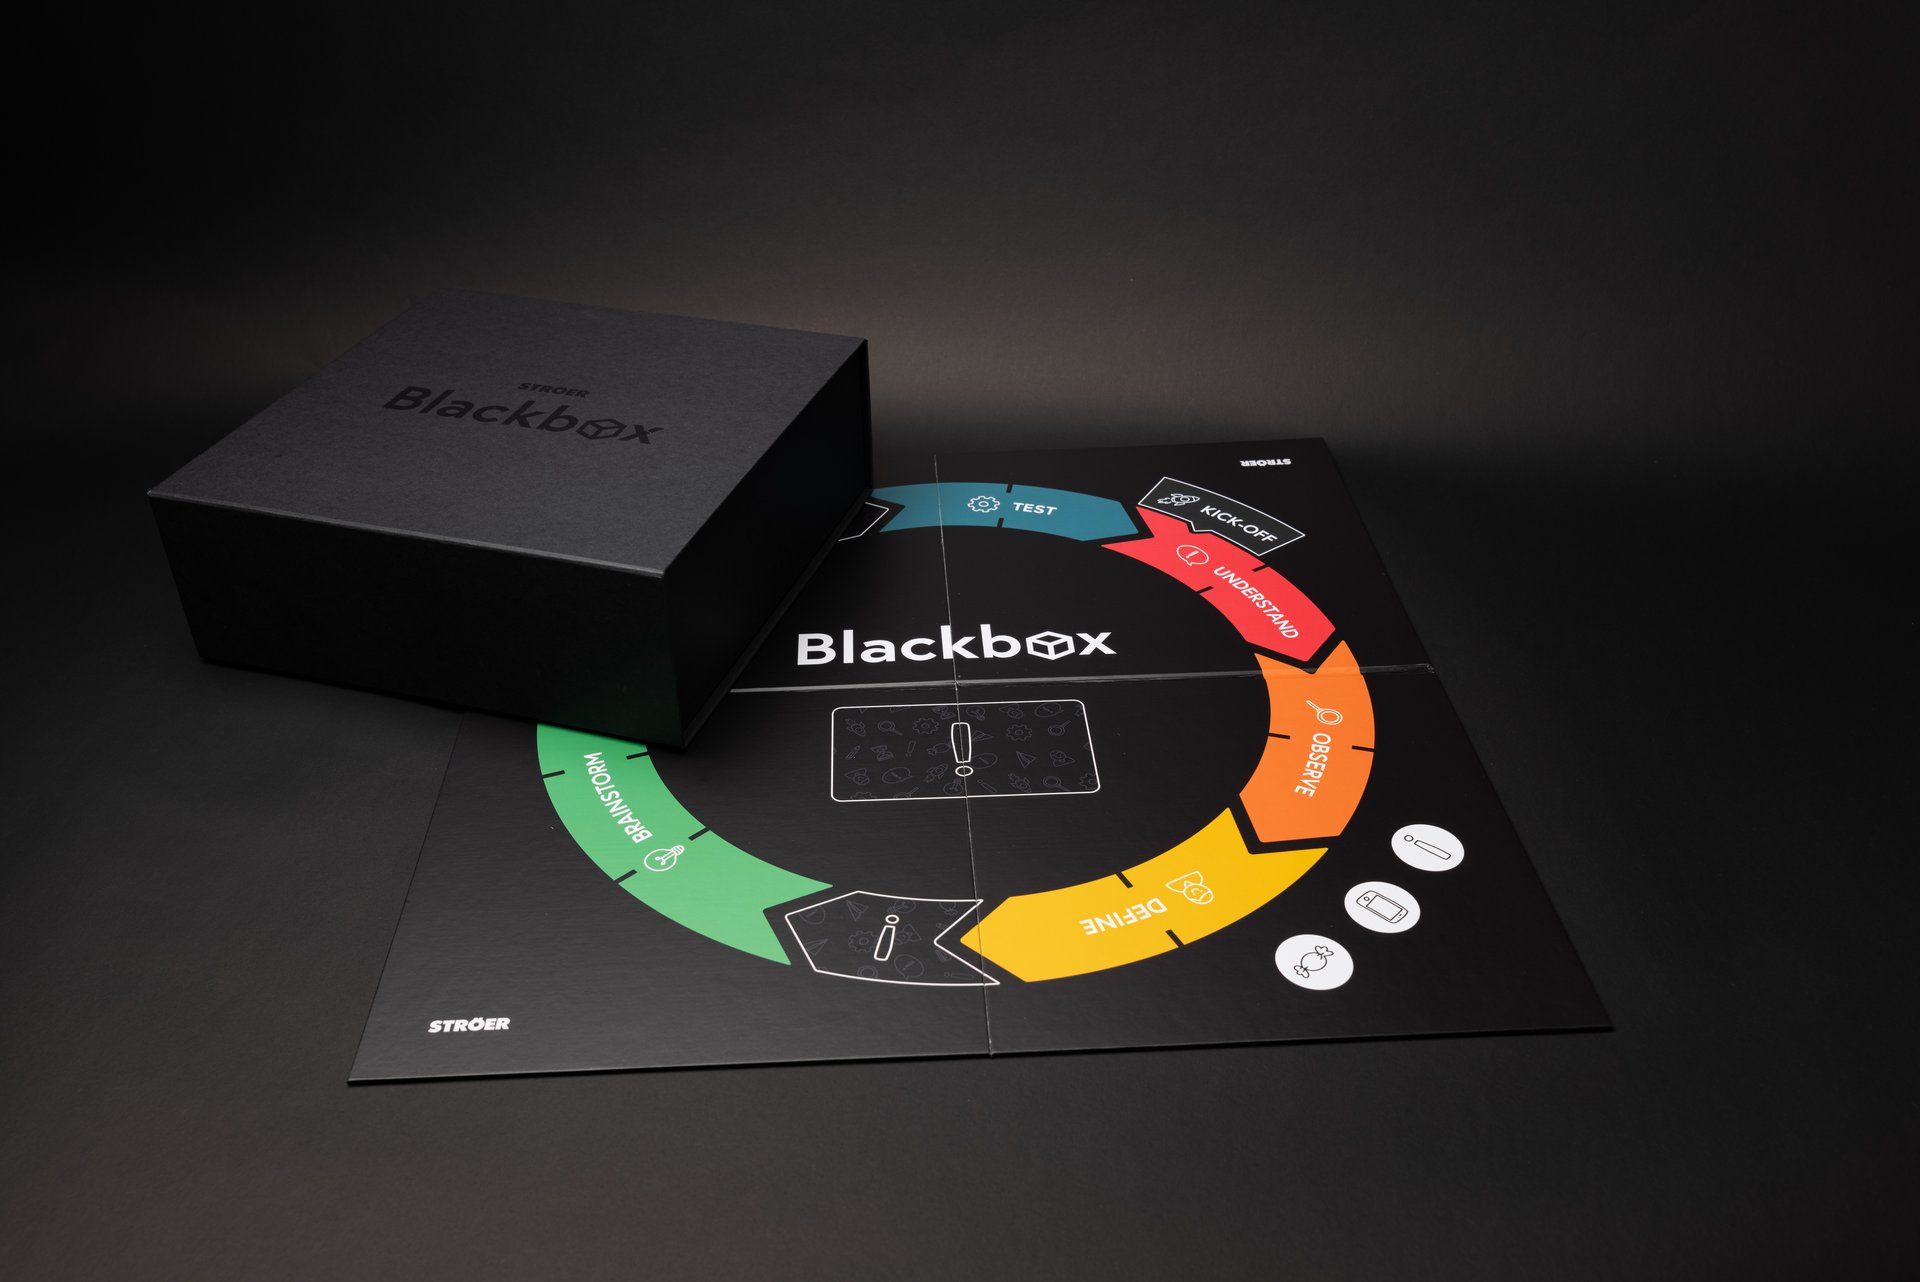 Interaktives Workshop-Erlebnis mit Ströer Blackbox – Fördert kreative Problemlösung und effektive Teamarbeit in Unternehmen.